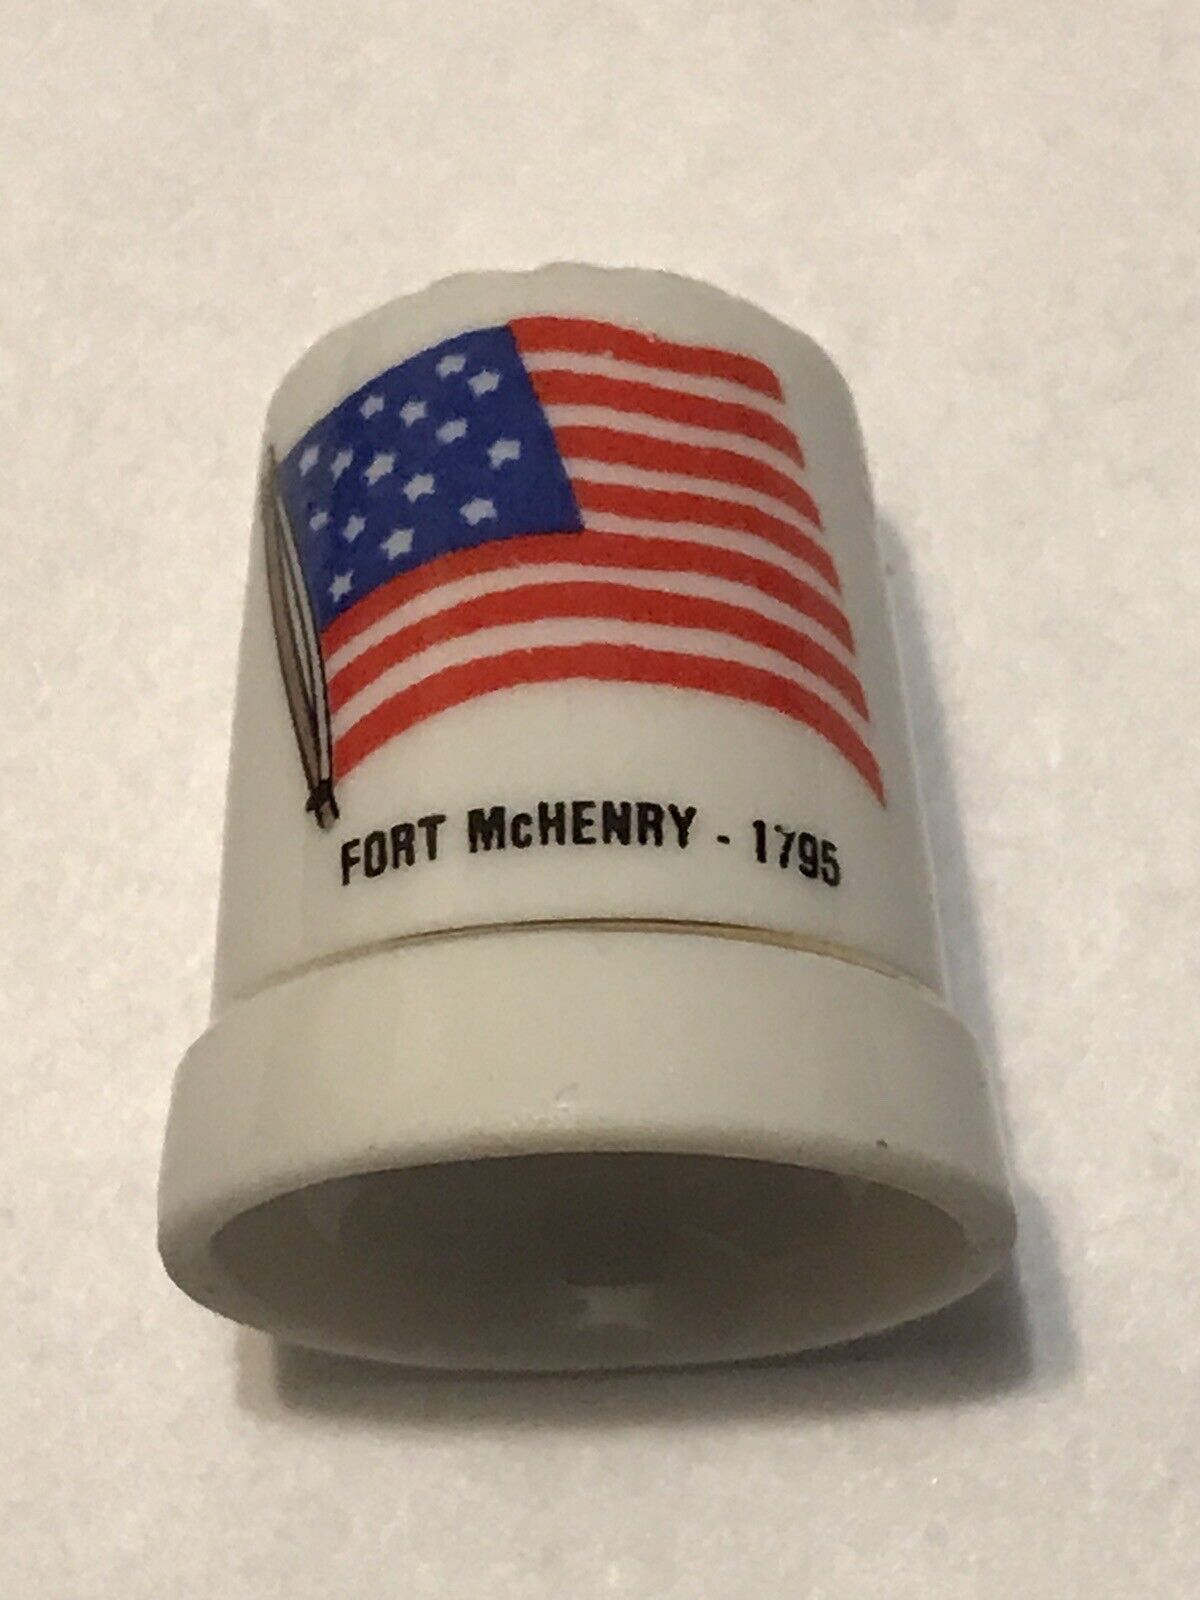 VTG Porcelain Souvenir Thimble FORT MCHENRY - 1795